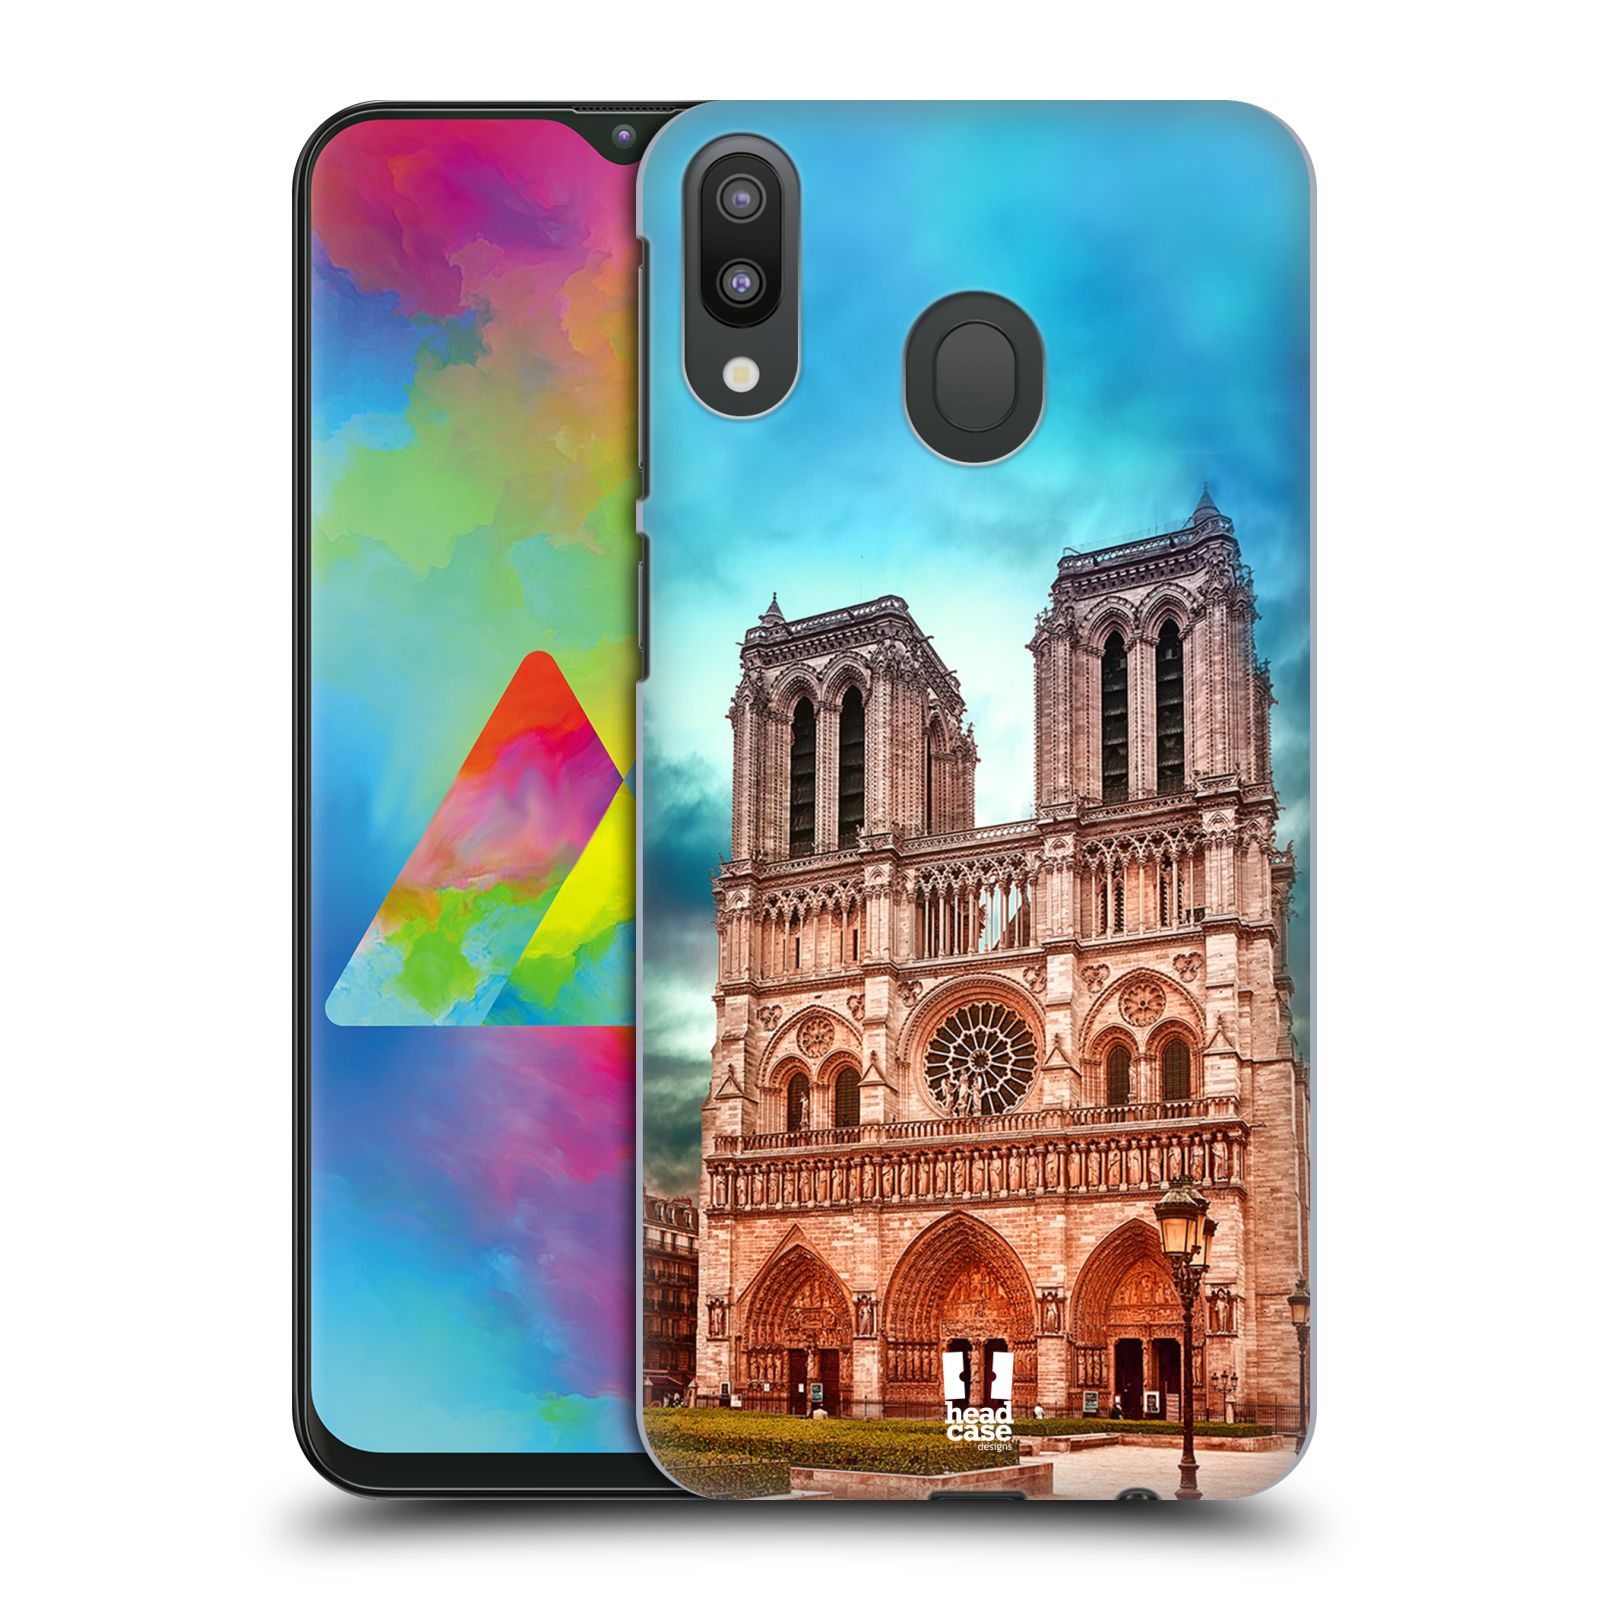 Pouzdro na mobil Samsung Galaxy M20 - HEAD CASE - historická místa katedrála Notre Dame